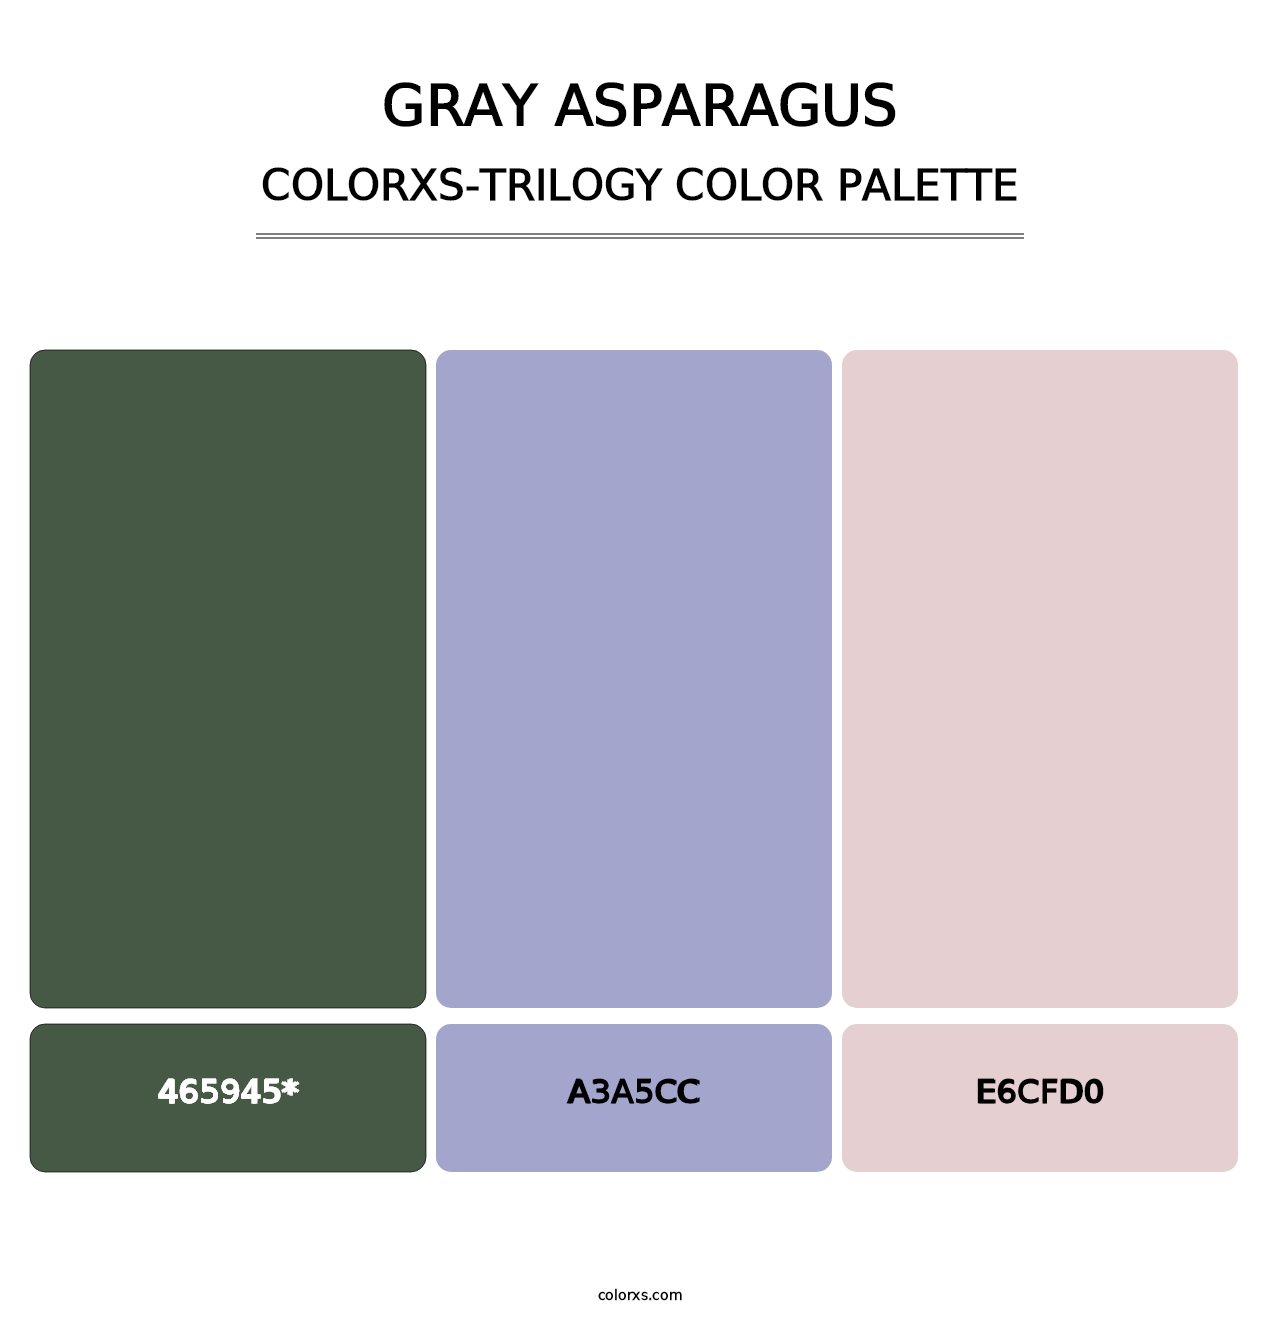 Gray Asparagus - Colorxs Trilogy Palette